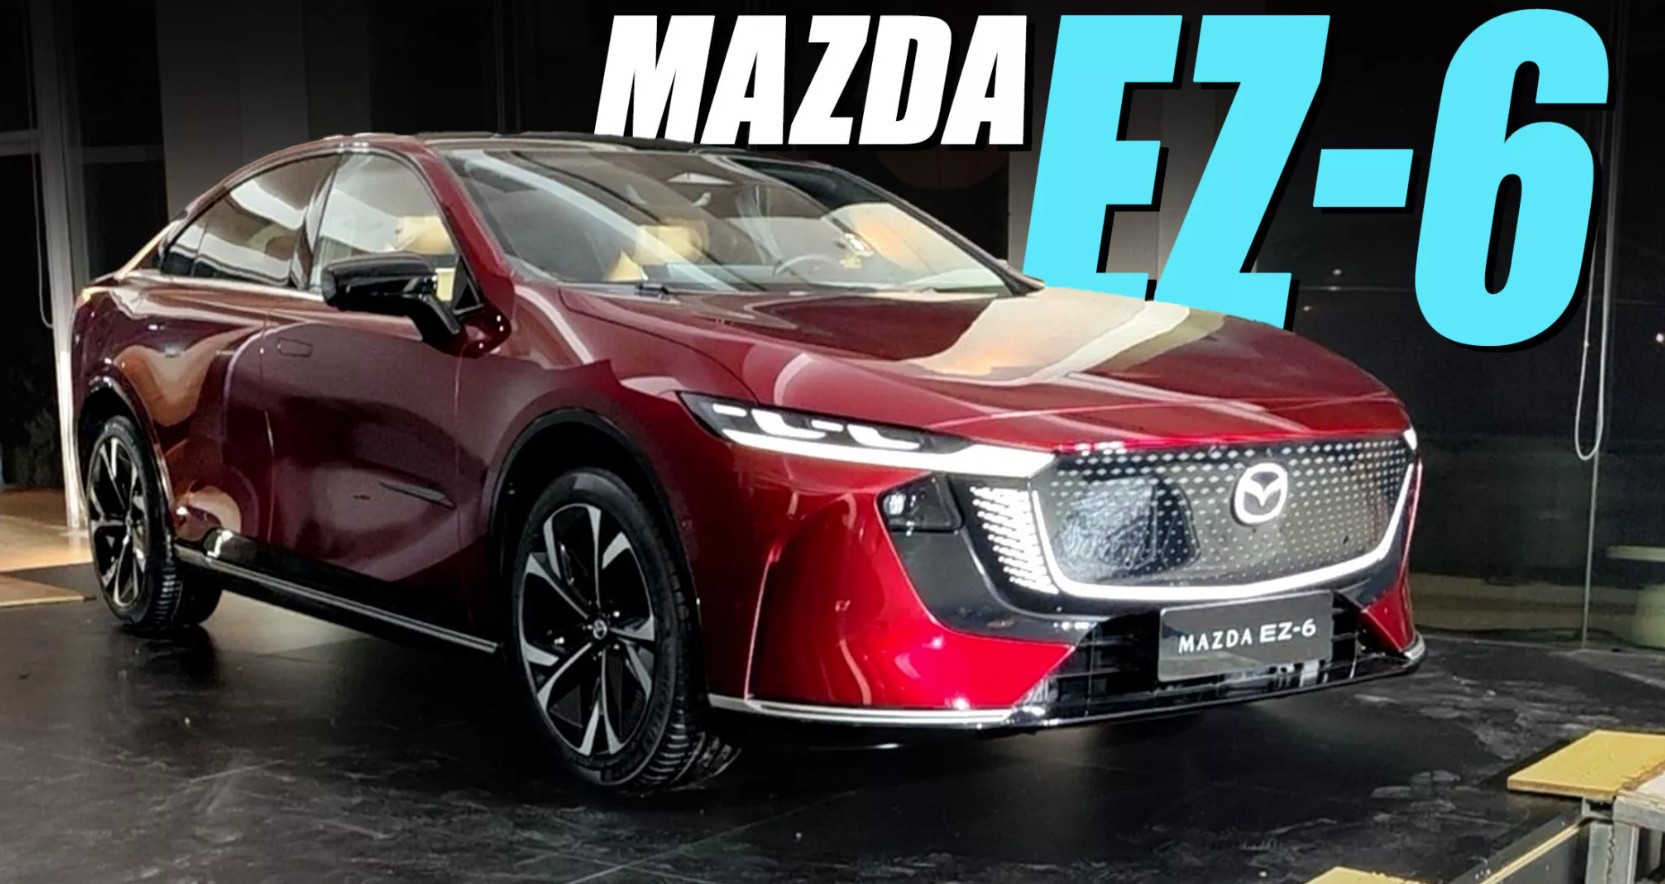 Sedan điện Mazda EZ-6 lộ diện với thiết kế cực bắt mắt